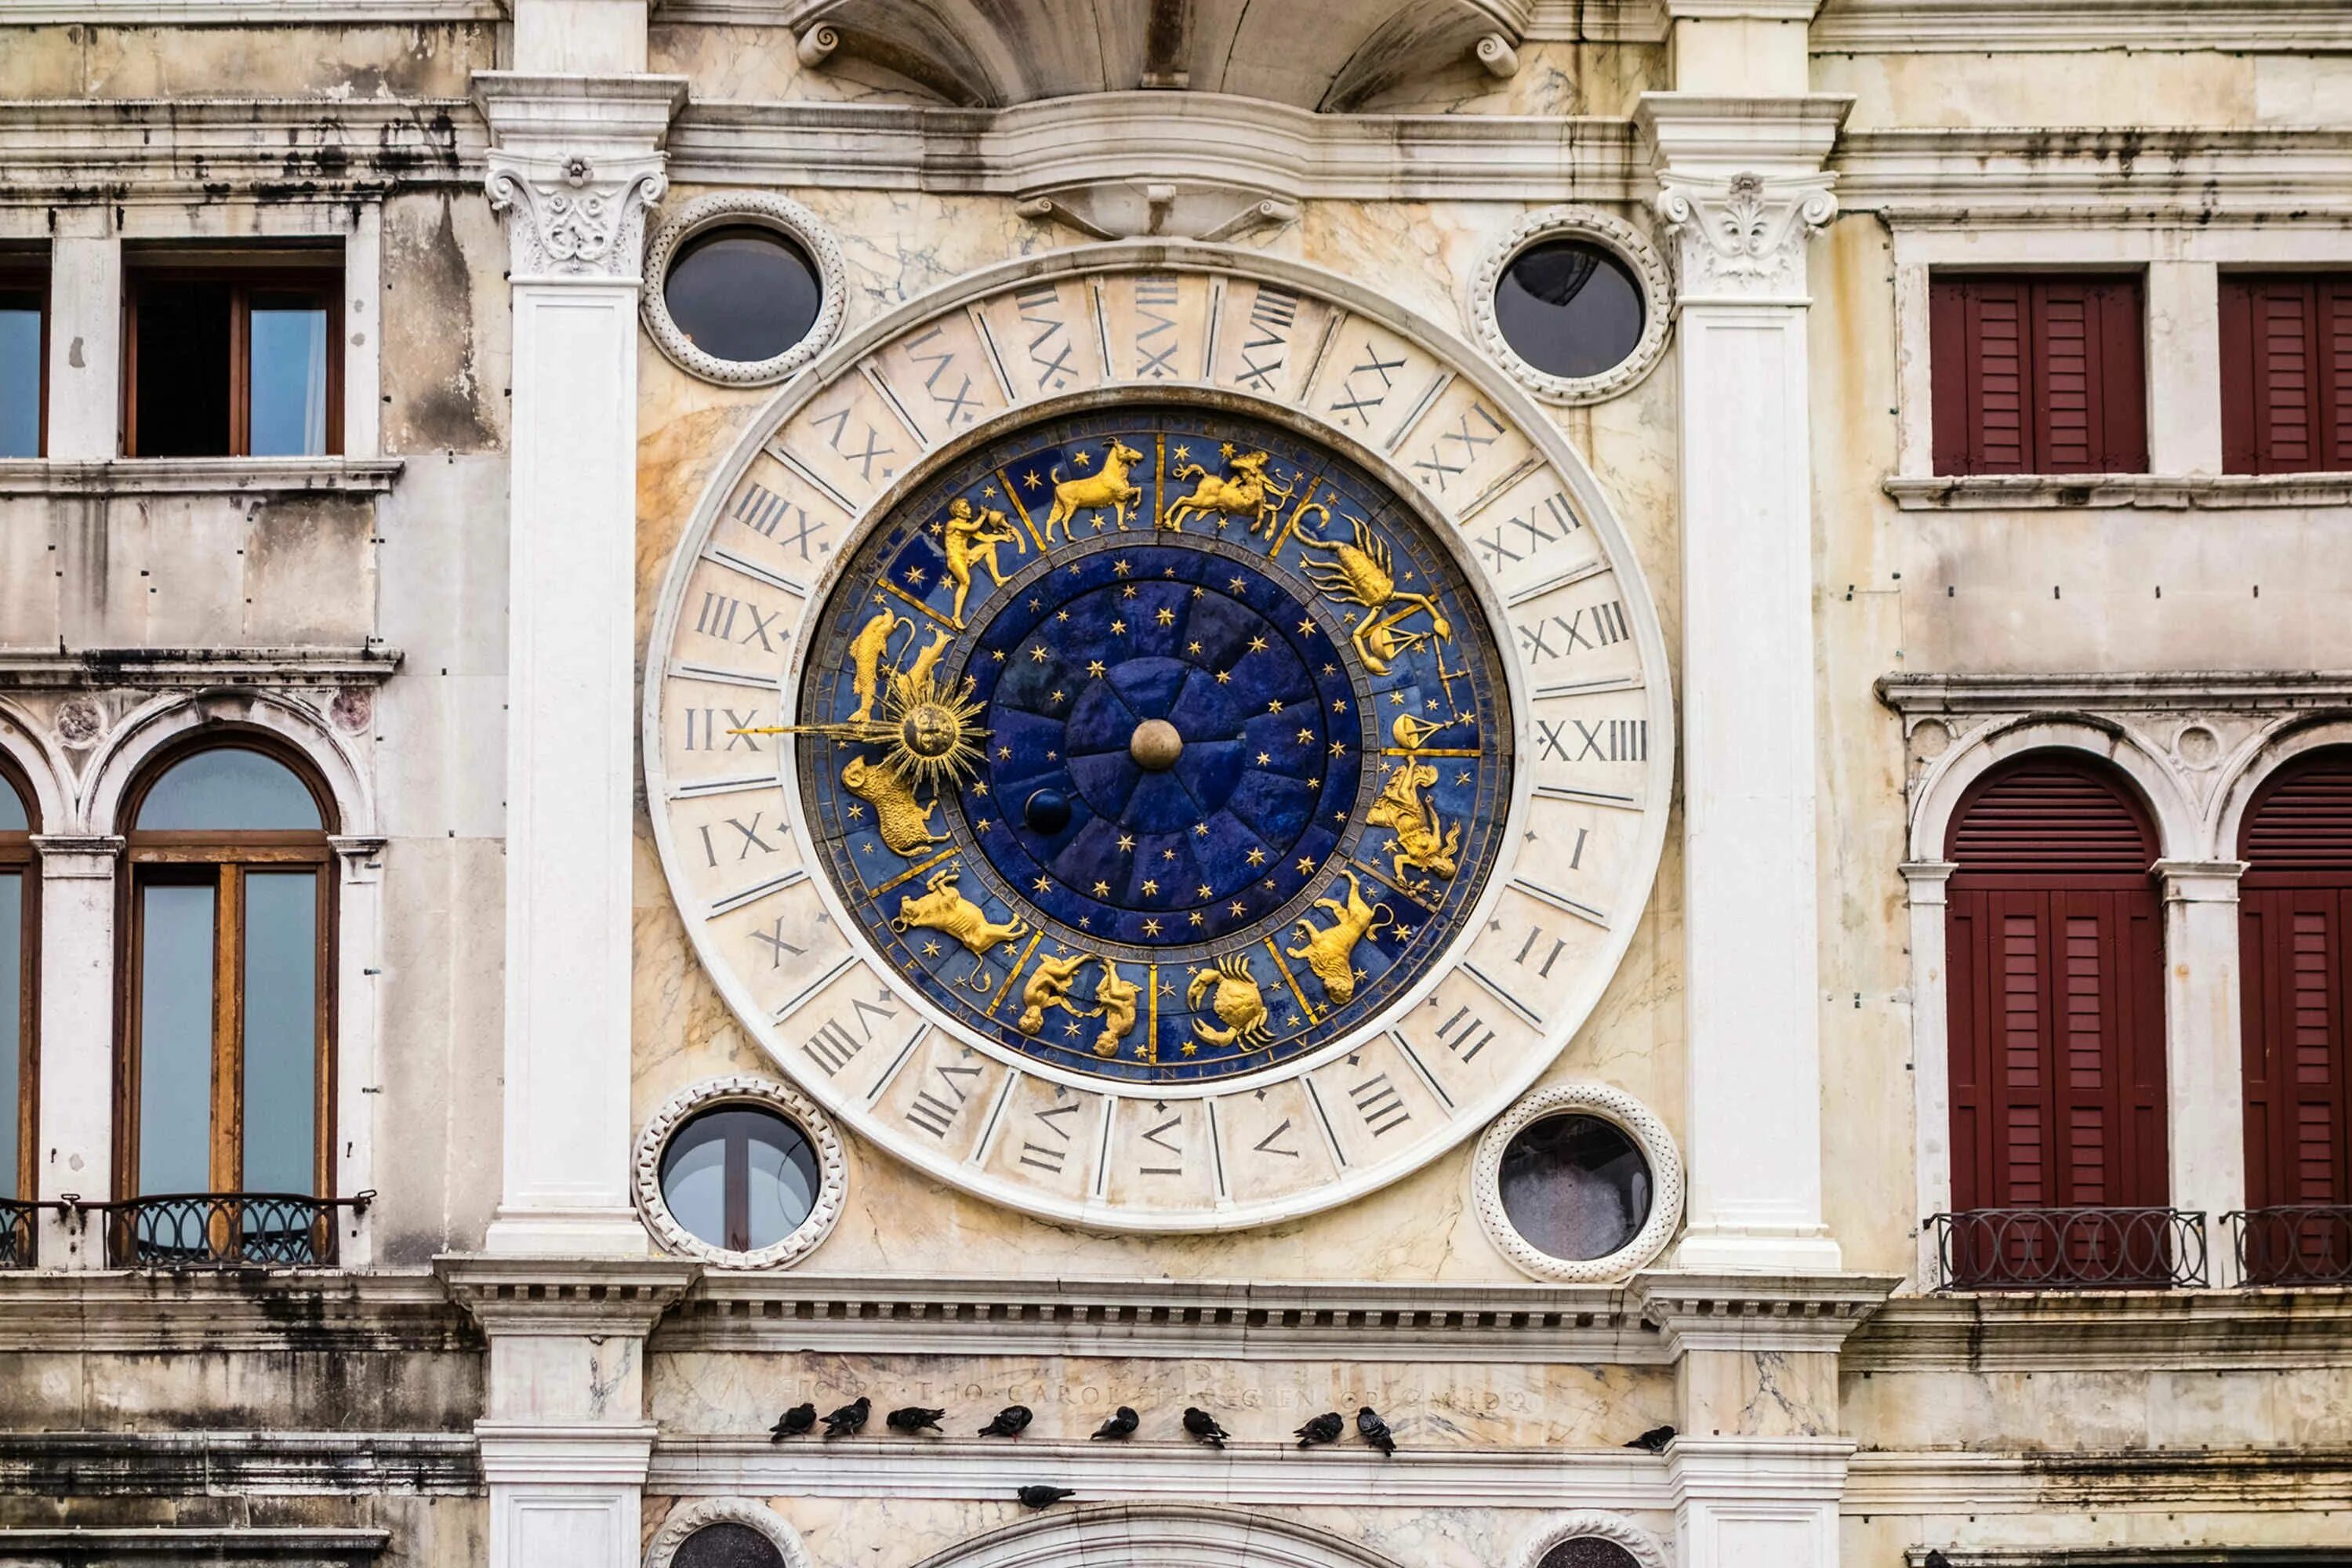 Италия часы время. Часовая башня Венеция. Часовая башня Святого марка в Венеции. Часовая башня Венеция Мадонна. Астрономические часы Брешиа Италия.